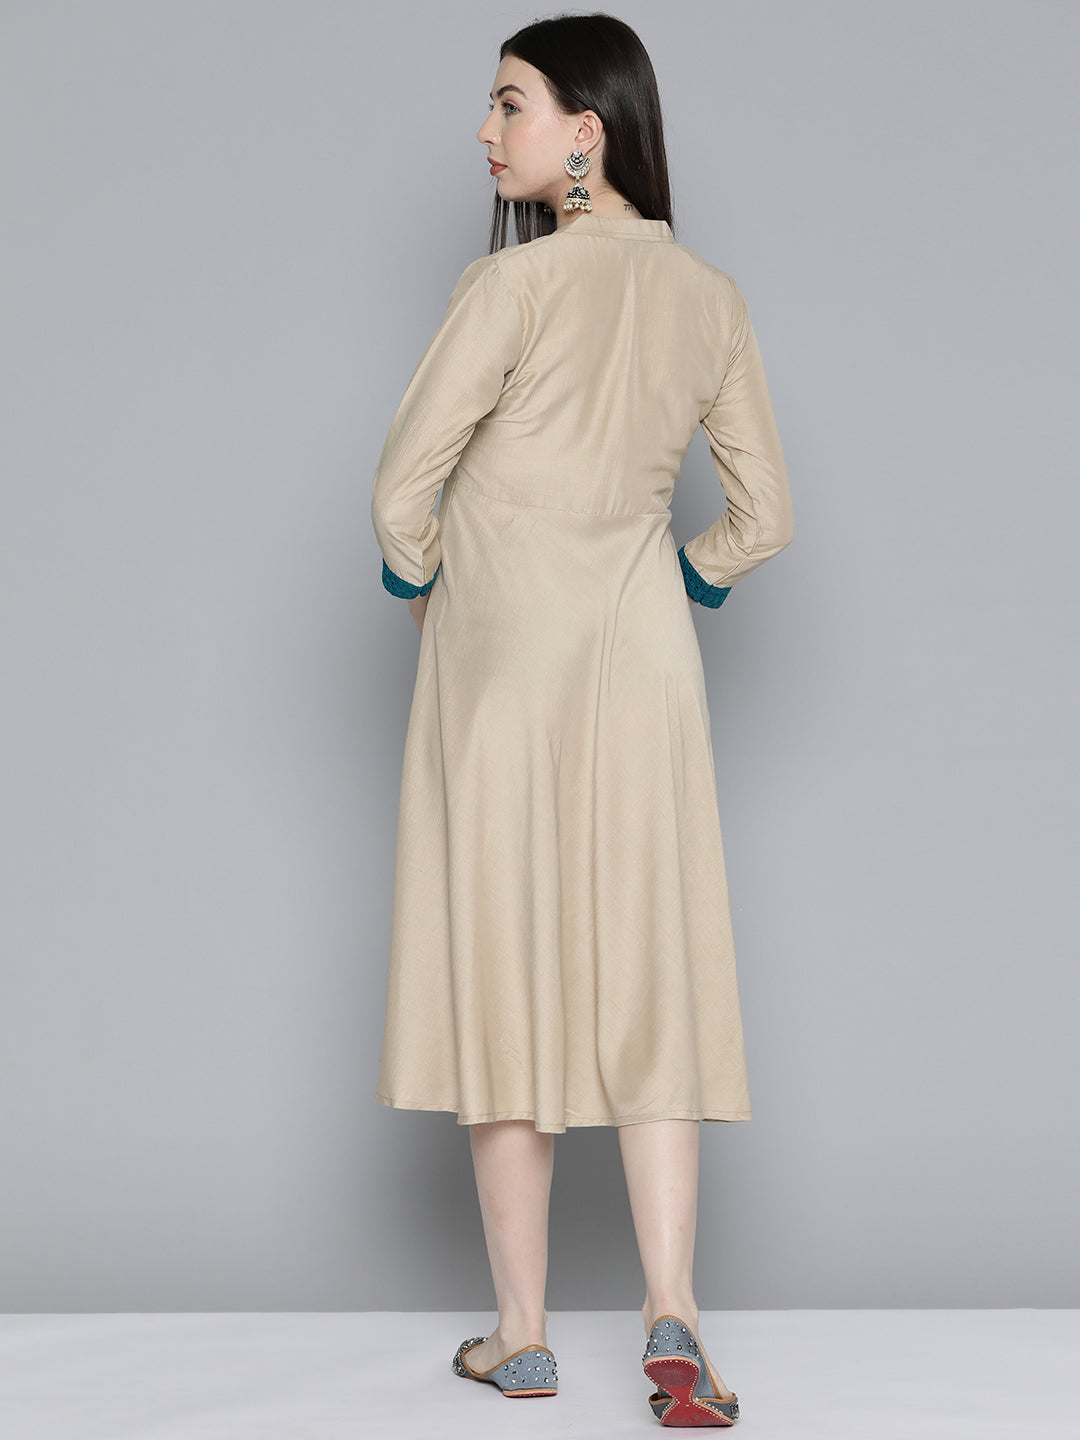 Jompers Women's Sequin work, flared ethnic dress - Beige - Distacart